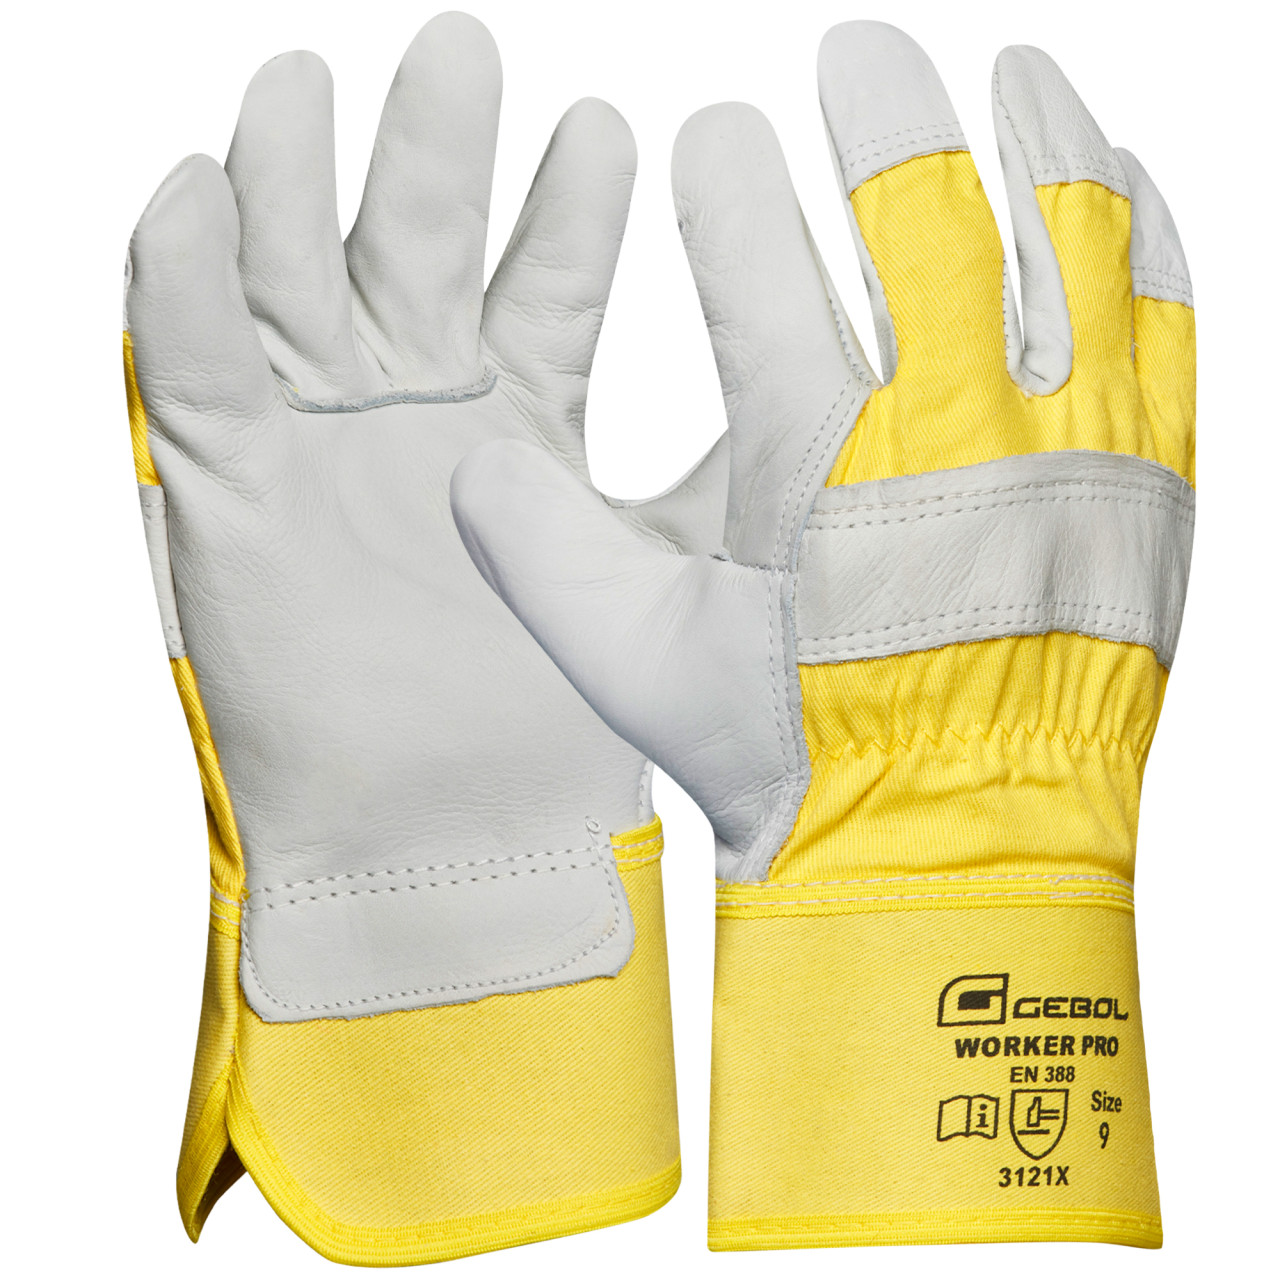 Gebol Handschuh Worker Pro gelb/weiß von GEBOL